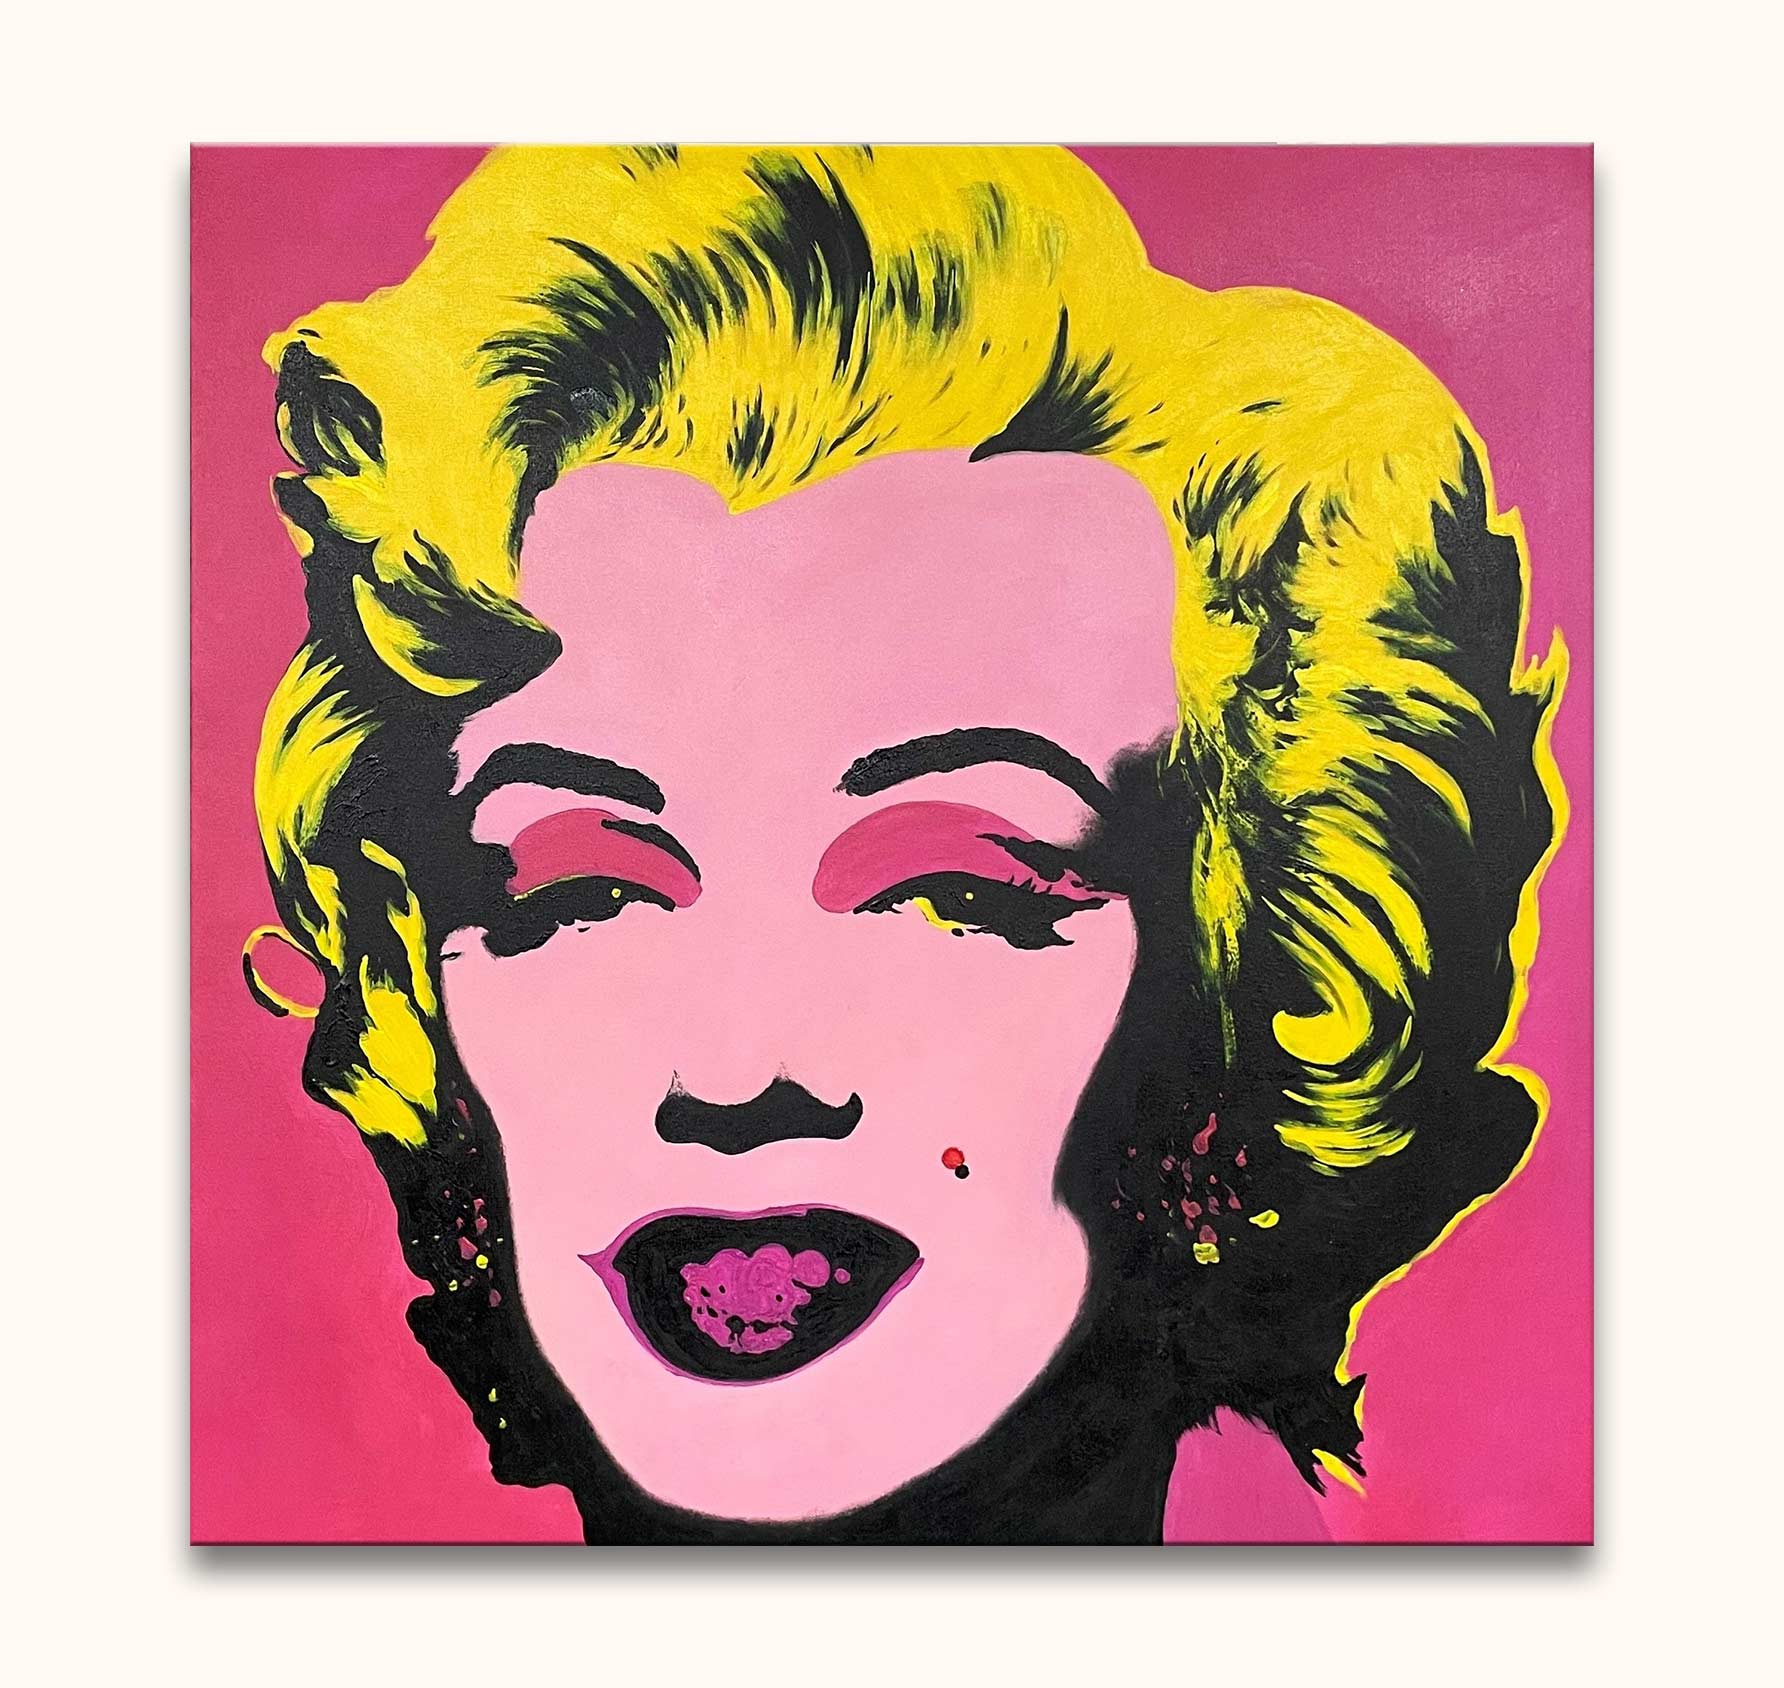 Inactief Miljard Oneindigheid Andy Warhol – Marylin Monroe – degrootmeesters.com